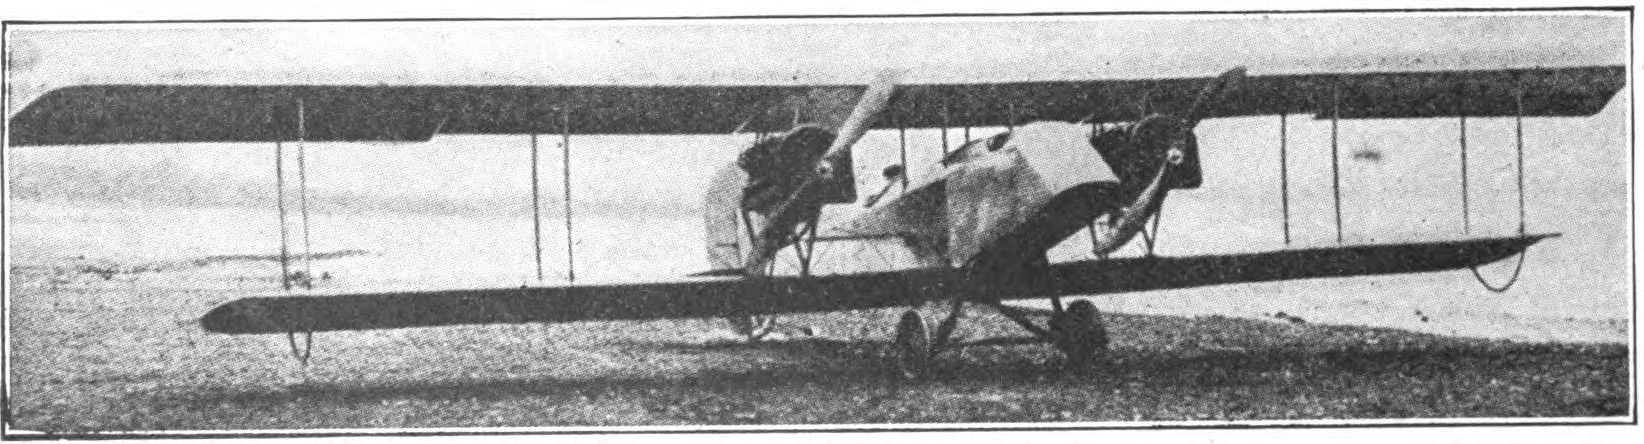 Fig. 4. Curtiss Twin Motor Biplane-Type JN.